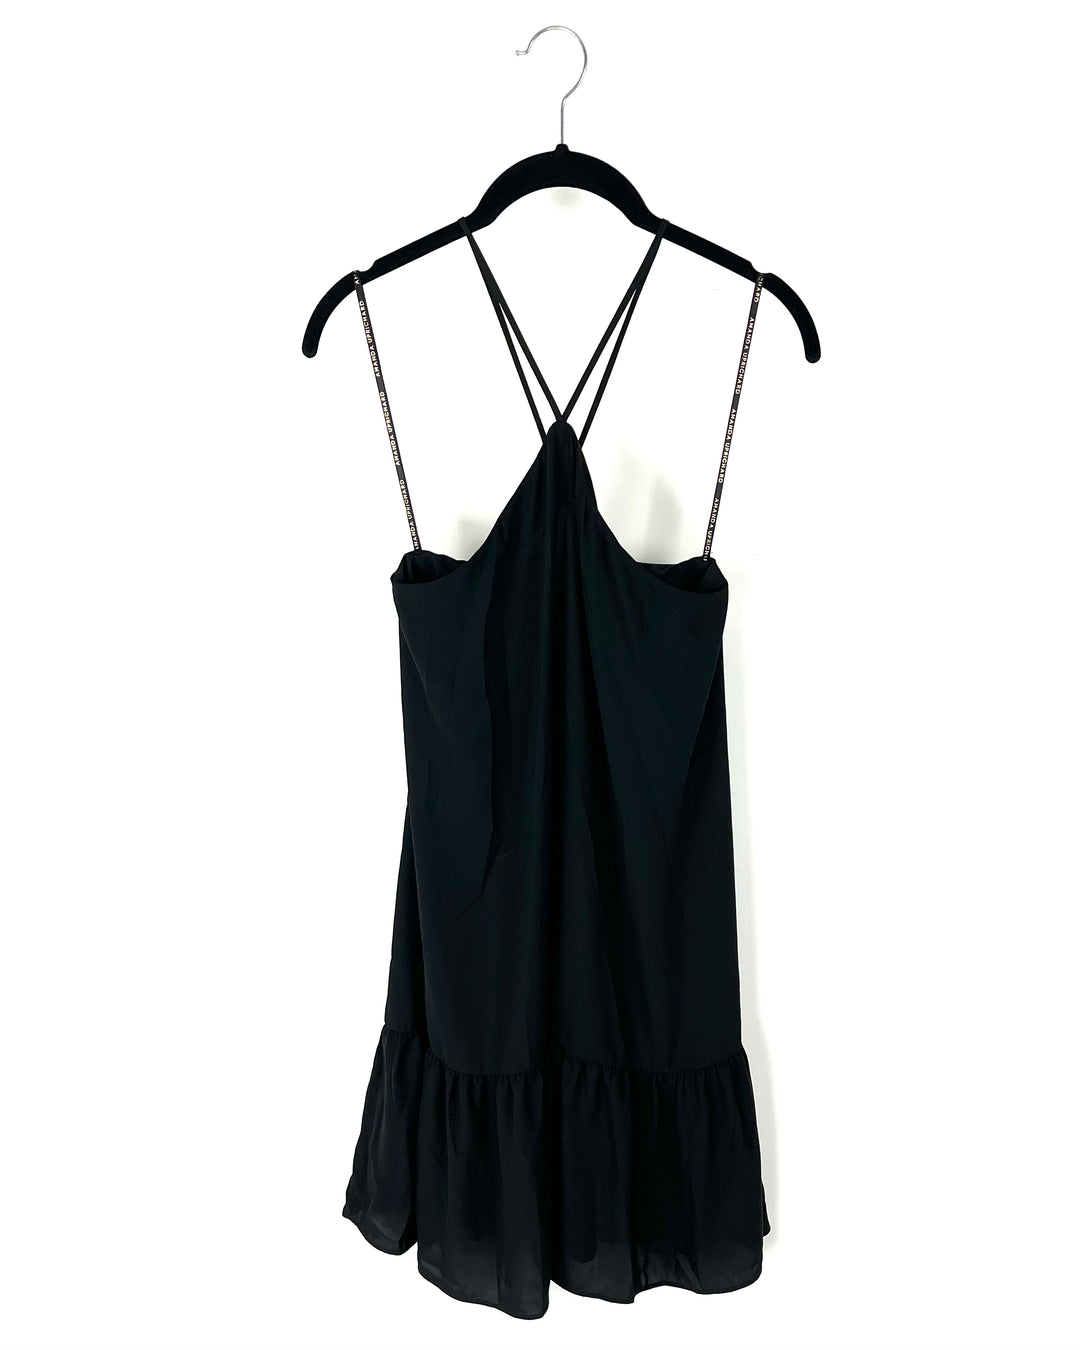 Black Criss Cross Short Dress - Size 4/6